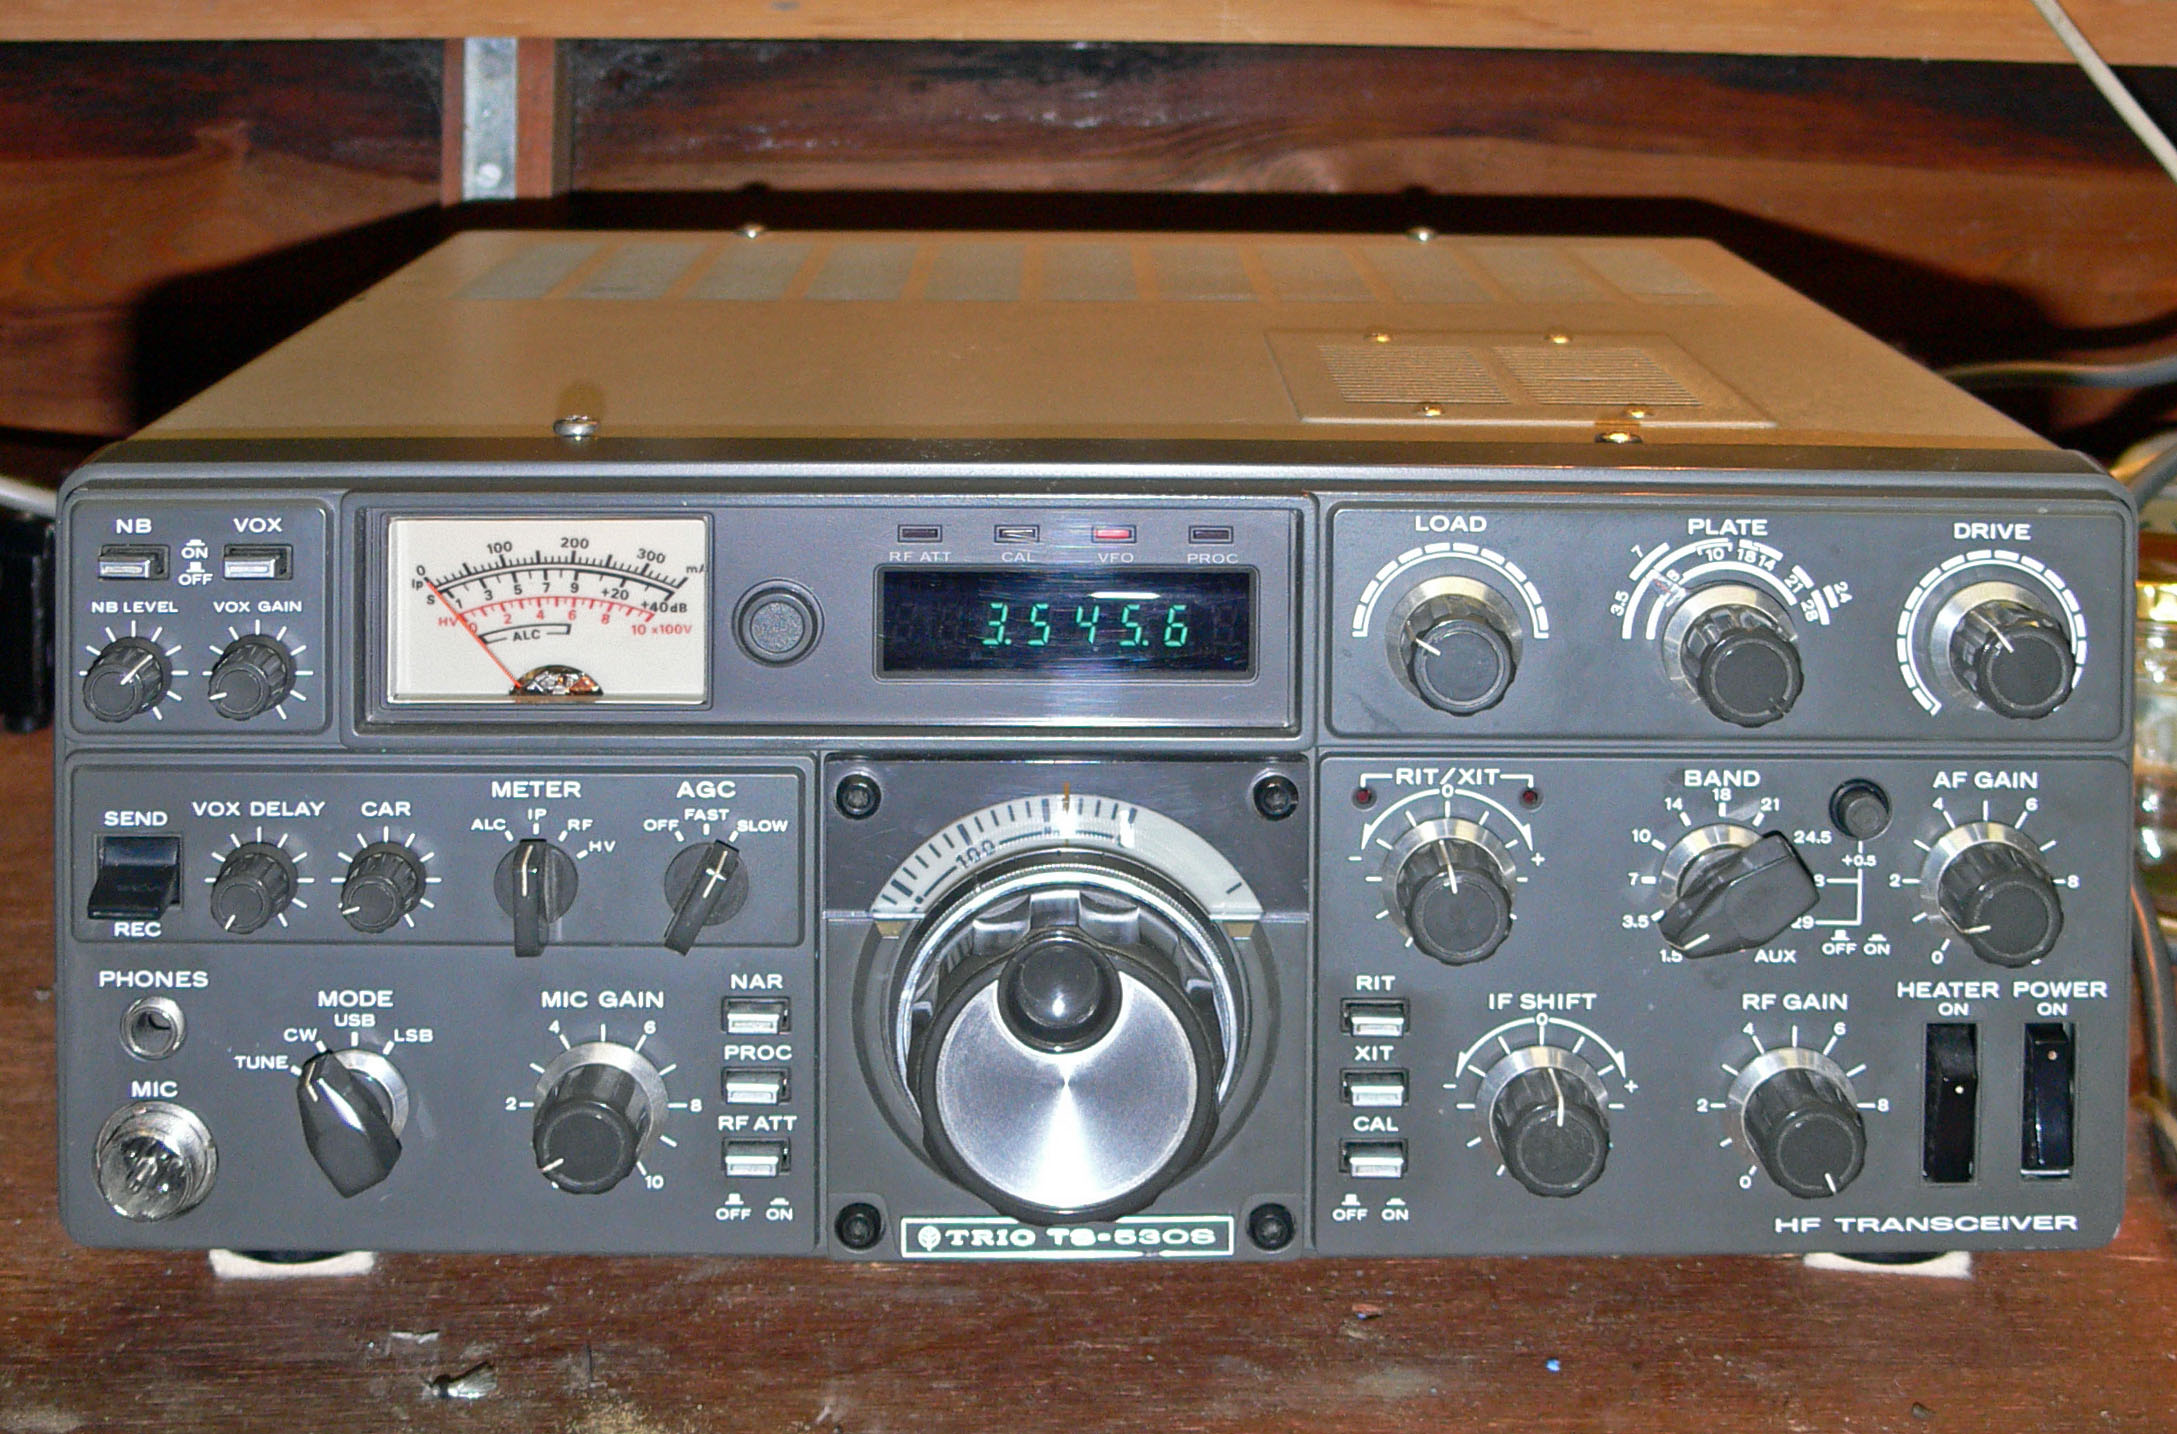 Kenwood ham radio serial numbers